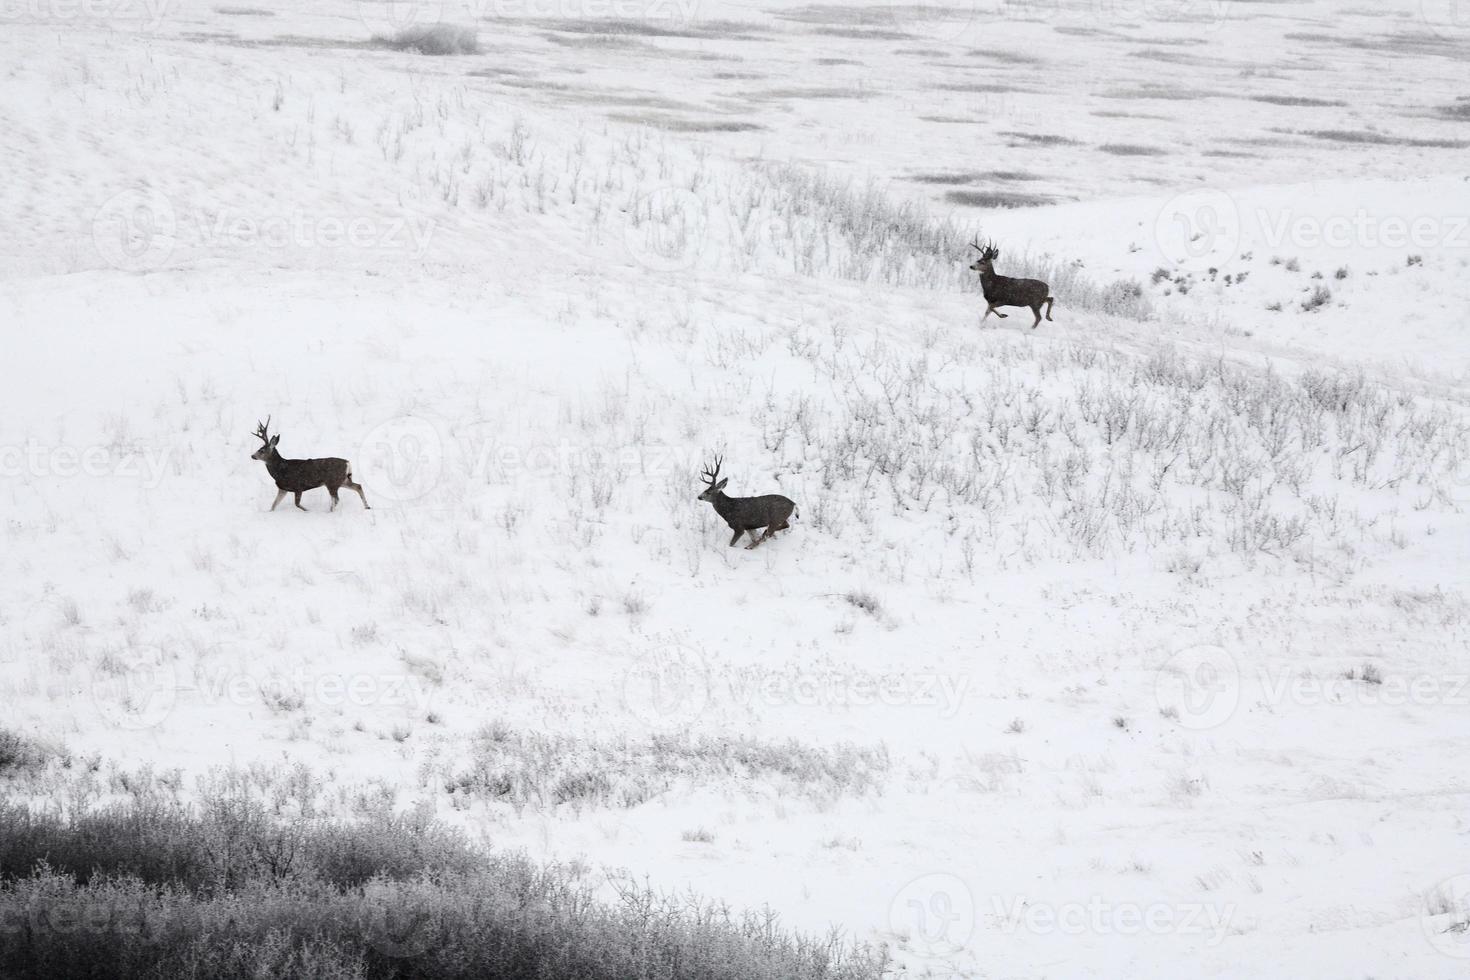 Three Mule Deer bucks in winter photo